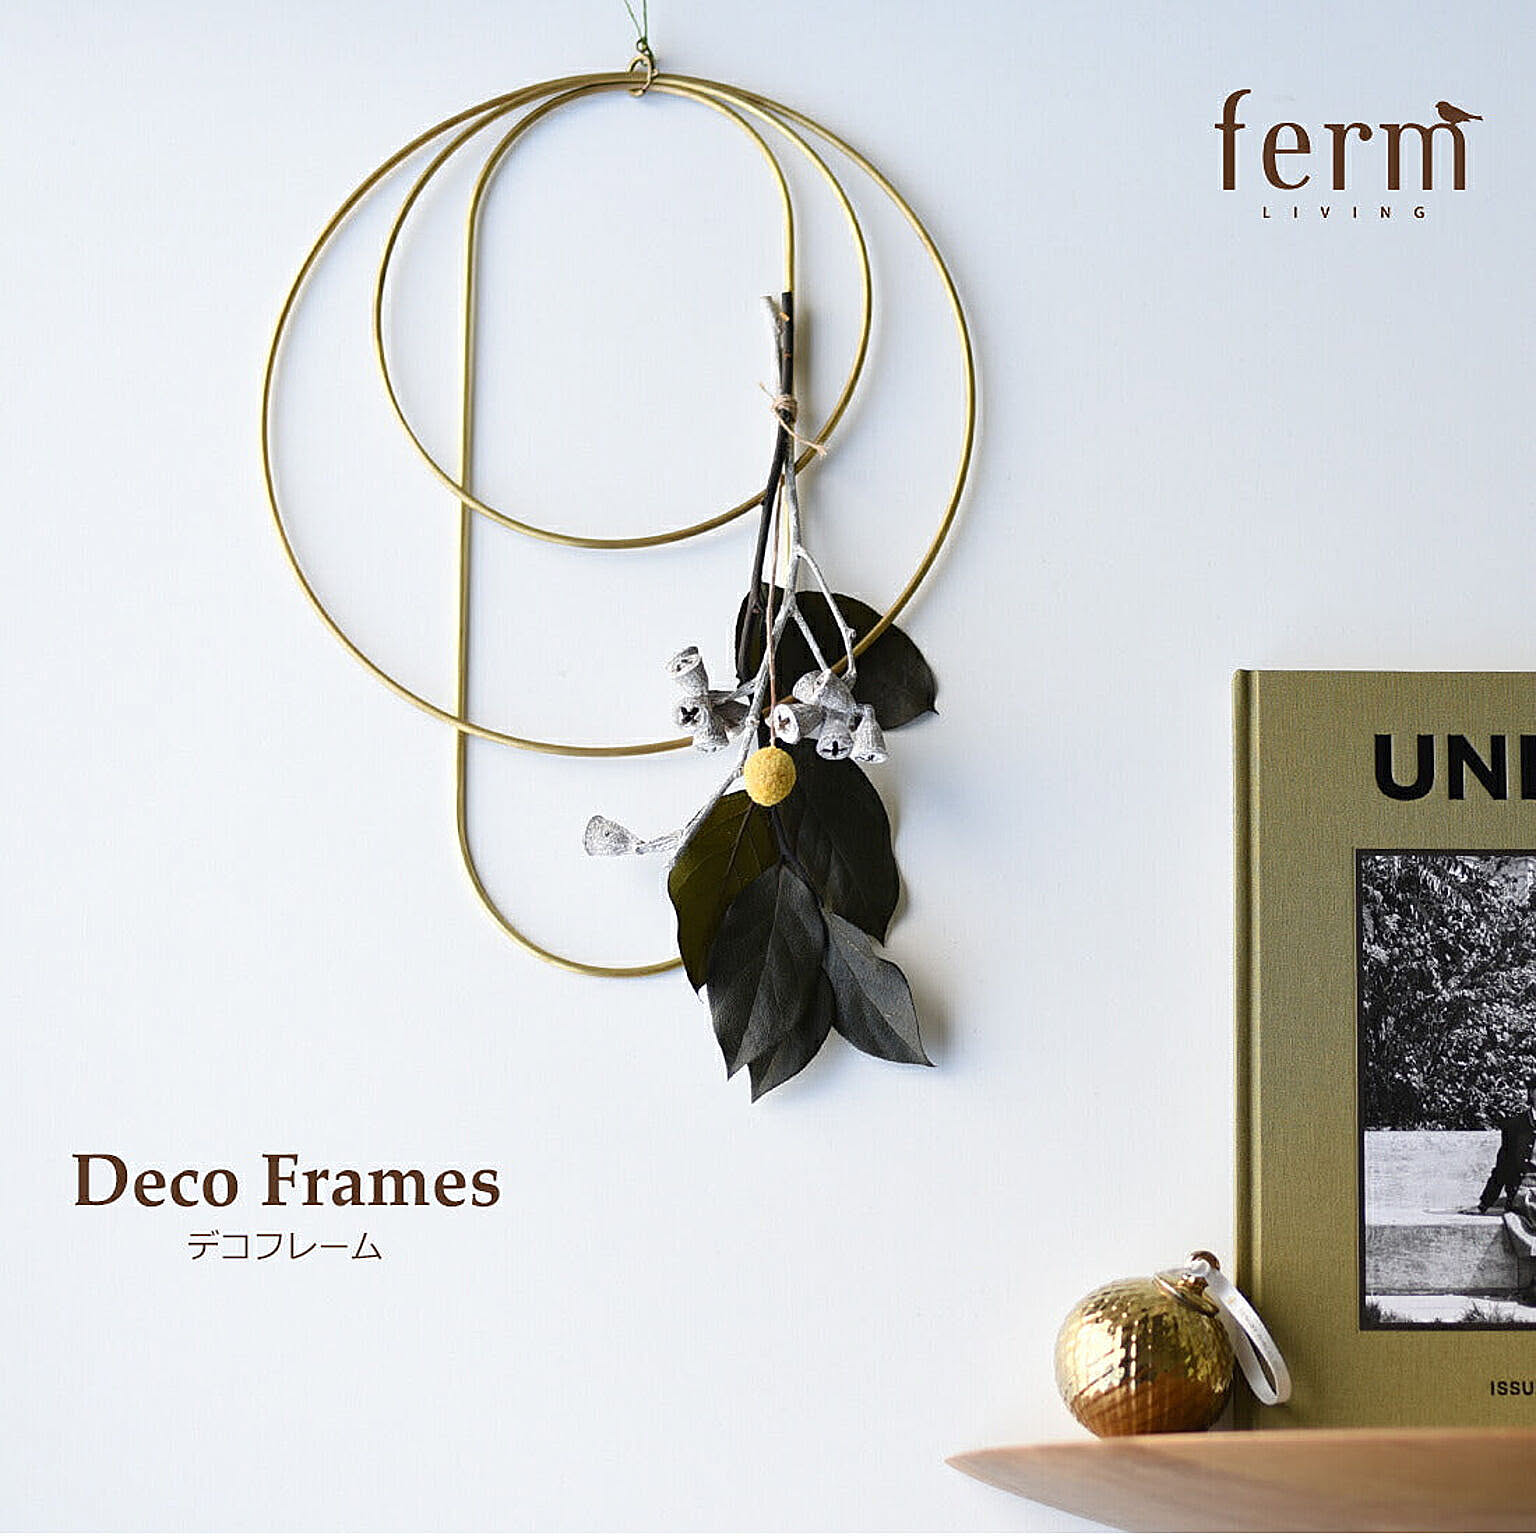 ferm LIVING / DECO FRAMES